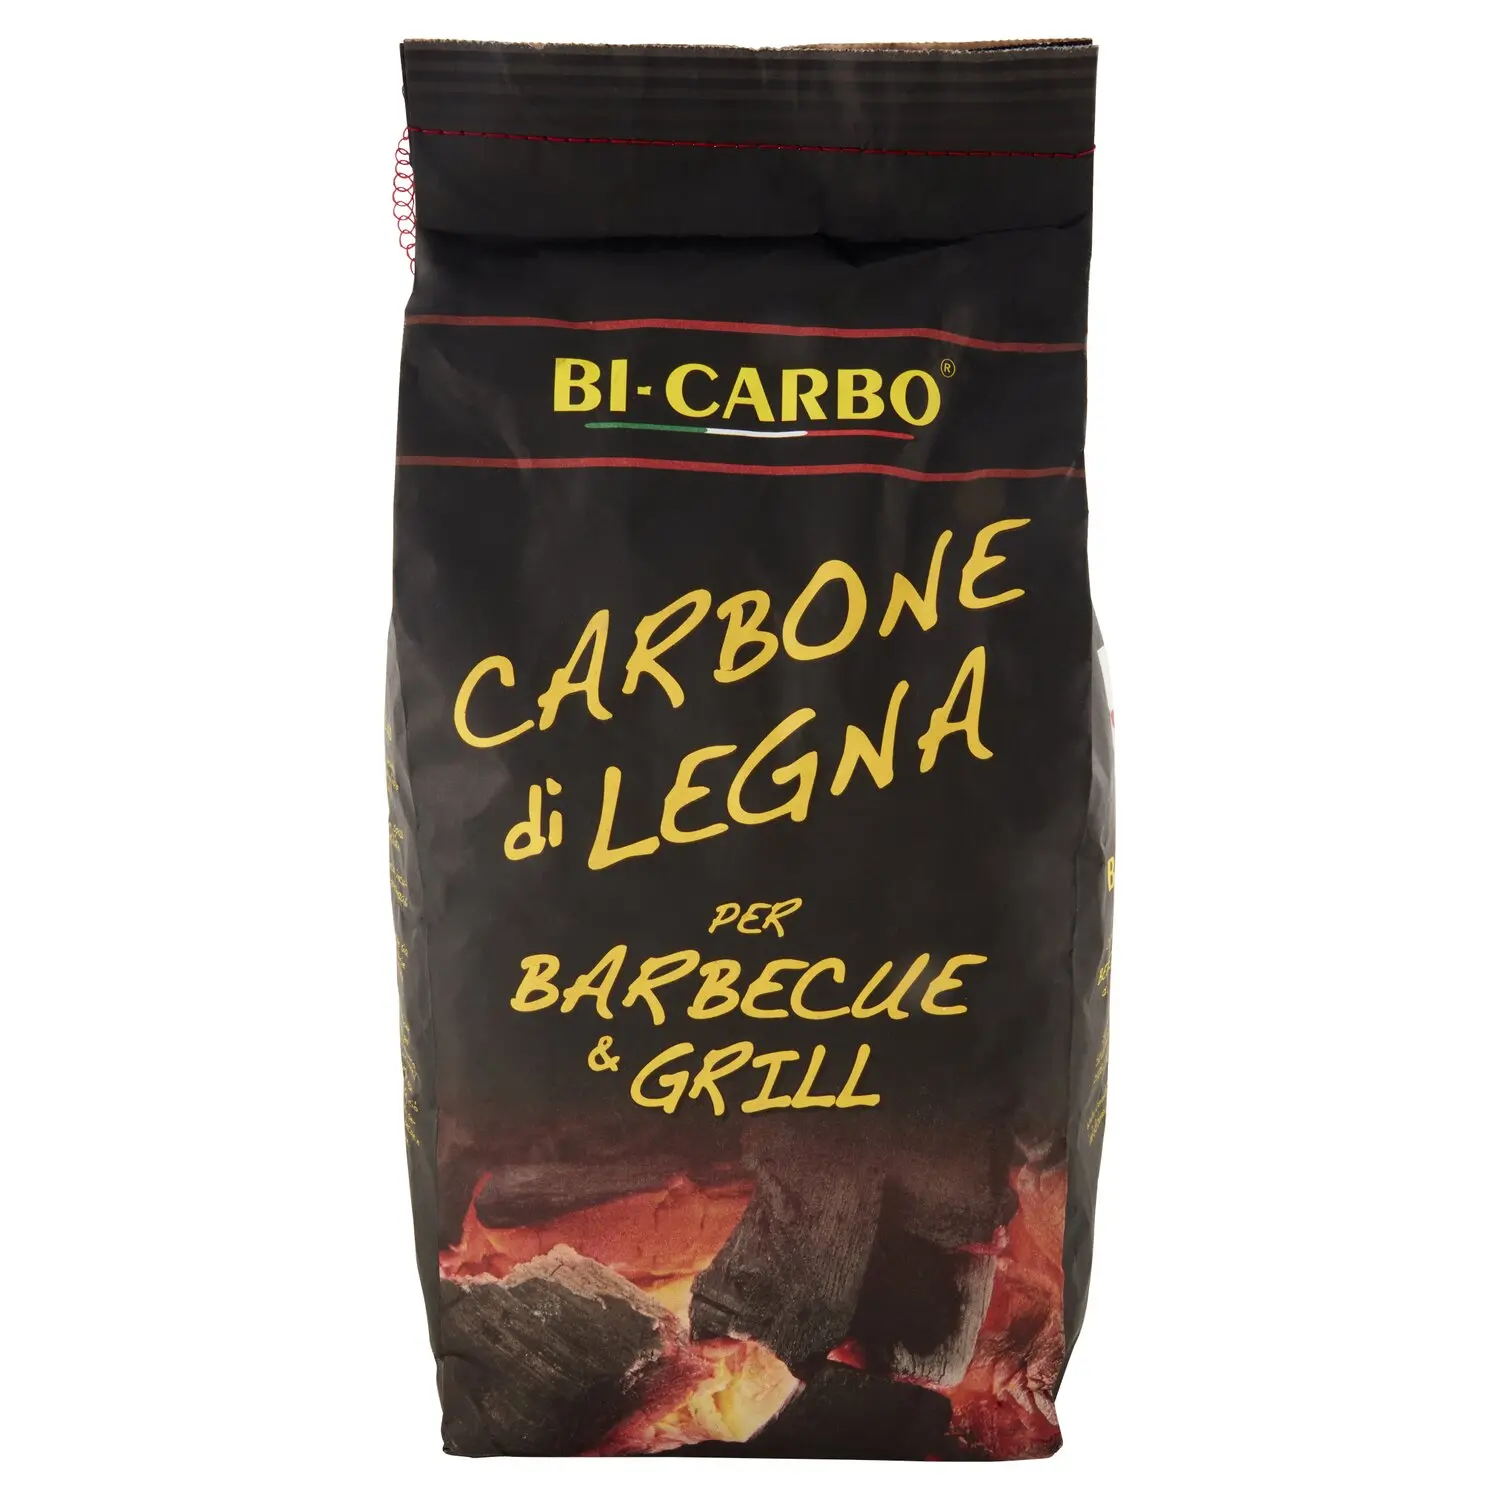 Bi-Carbo Carbone di Legna per Barbecue & Grill 3 Kg